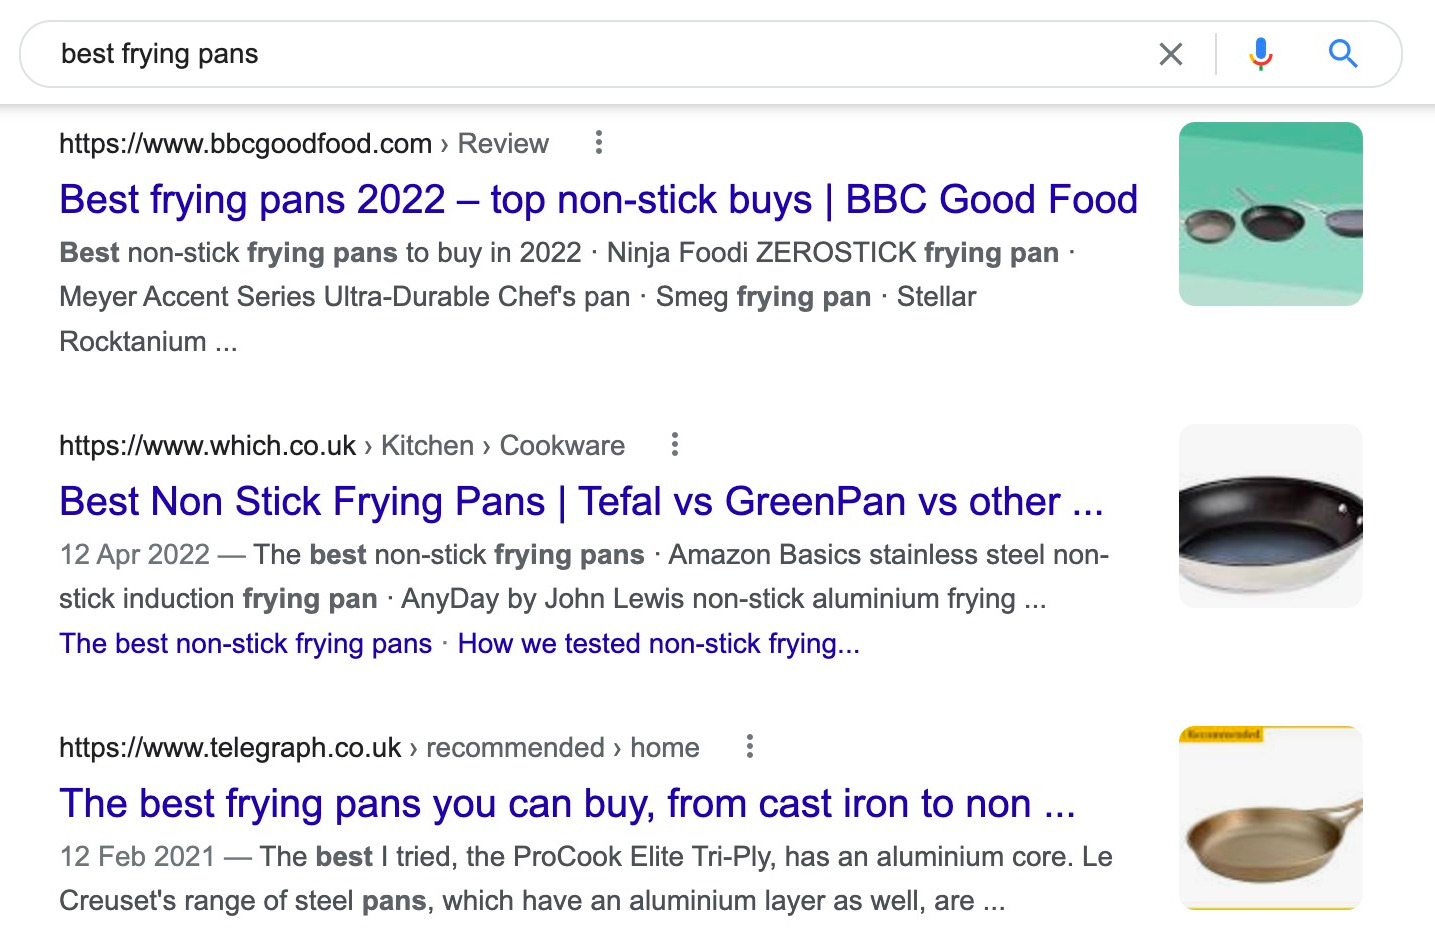 Google SERP for "best frying pans"